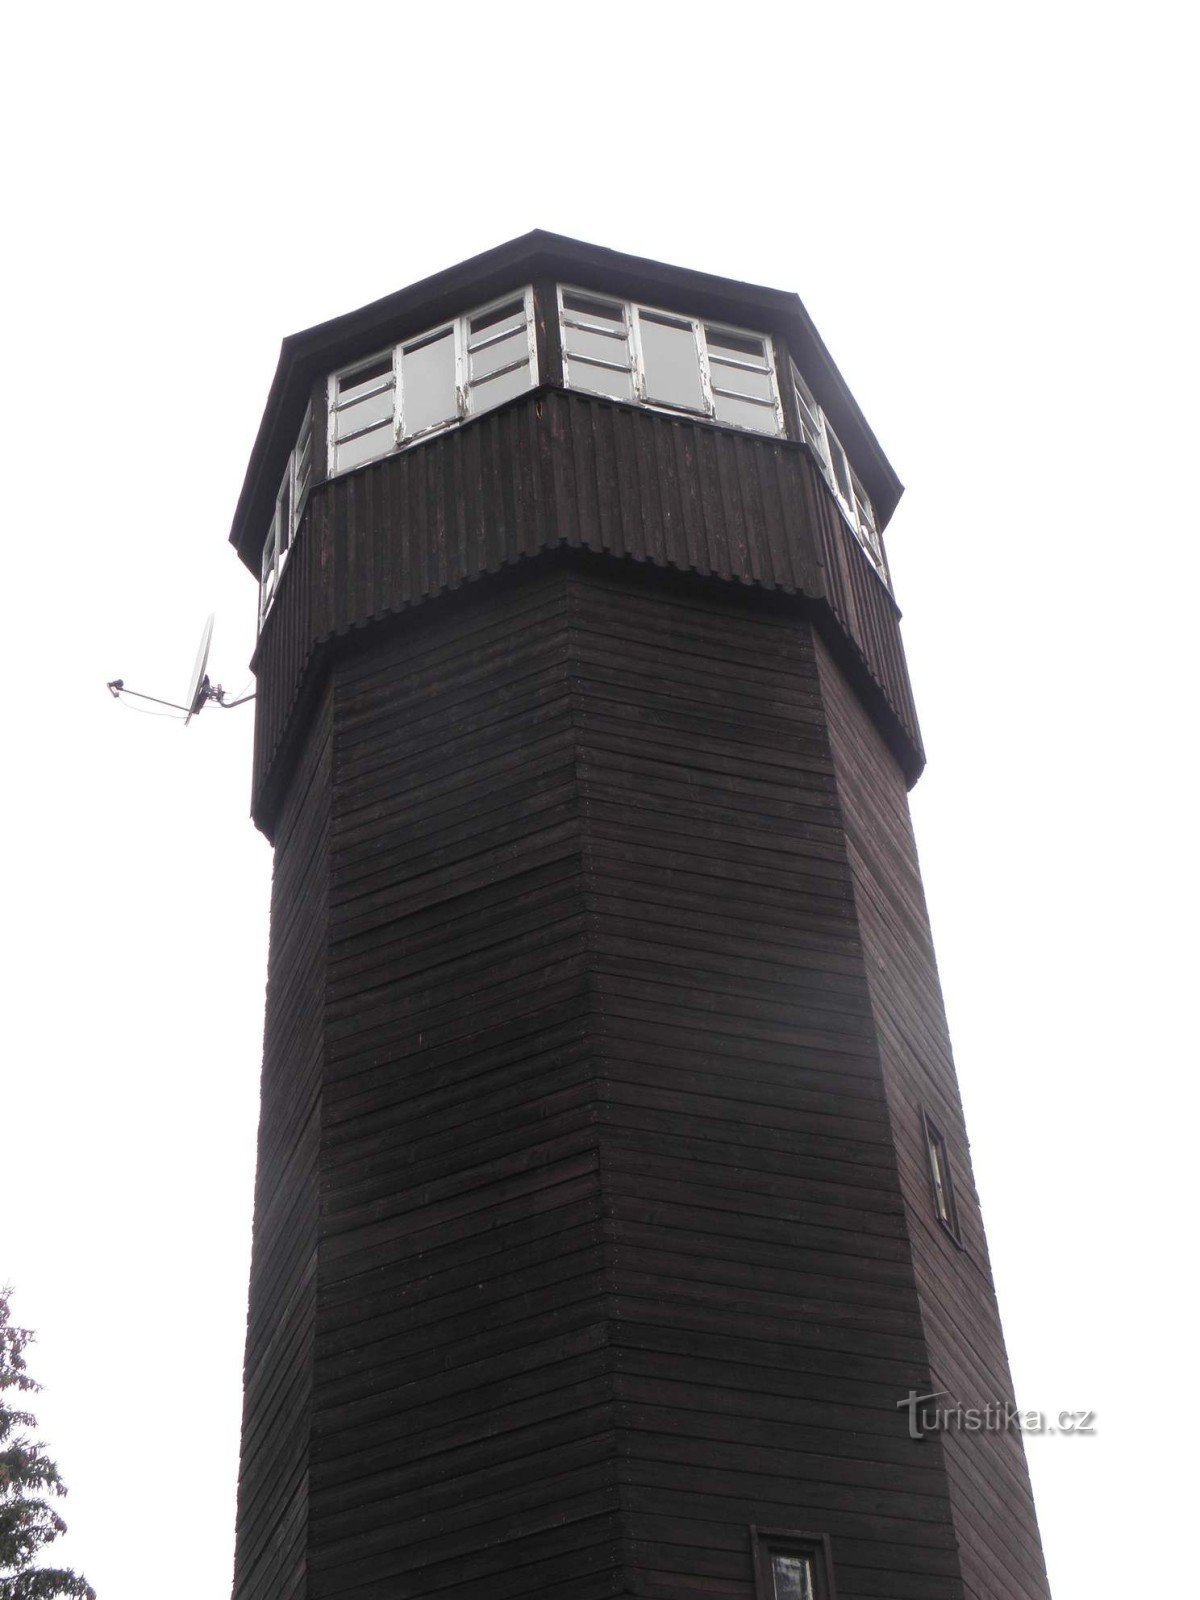 Смотровая башня Блайберг - Оловеный холм, Бублава - 12.8.2011